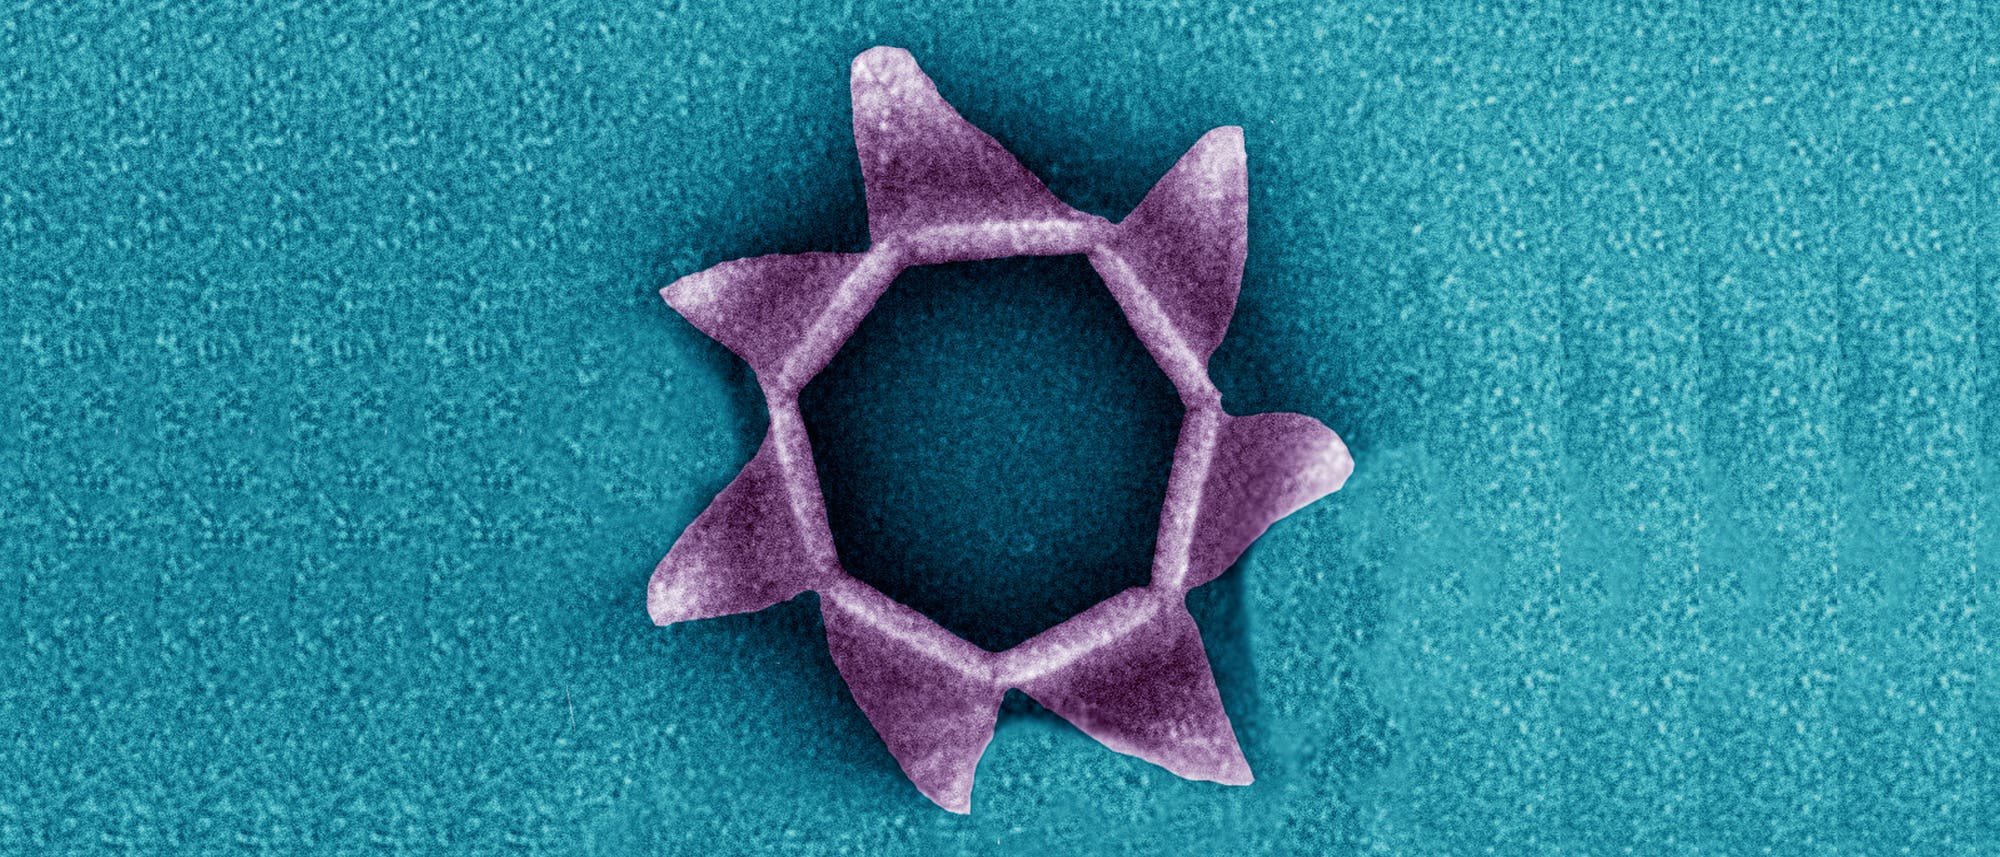 SIRV-2-Virus. Ein virales Protein bildet eine siebenseitige Pyramide auf der Zelloberfläche, die sich wie eine Blüte öffnet und die reifen Virenpartikel entlässt (eingefärbte elektronenmikroskopische Aufnahme).